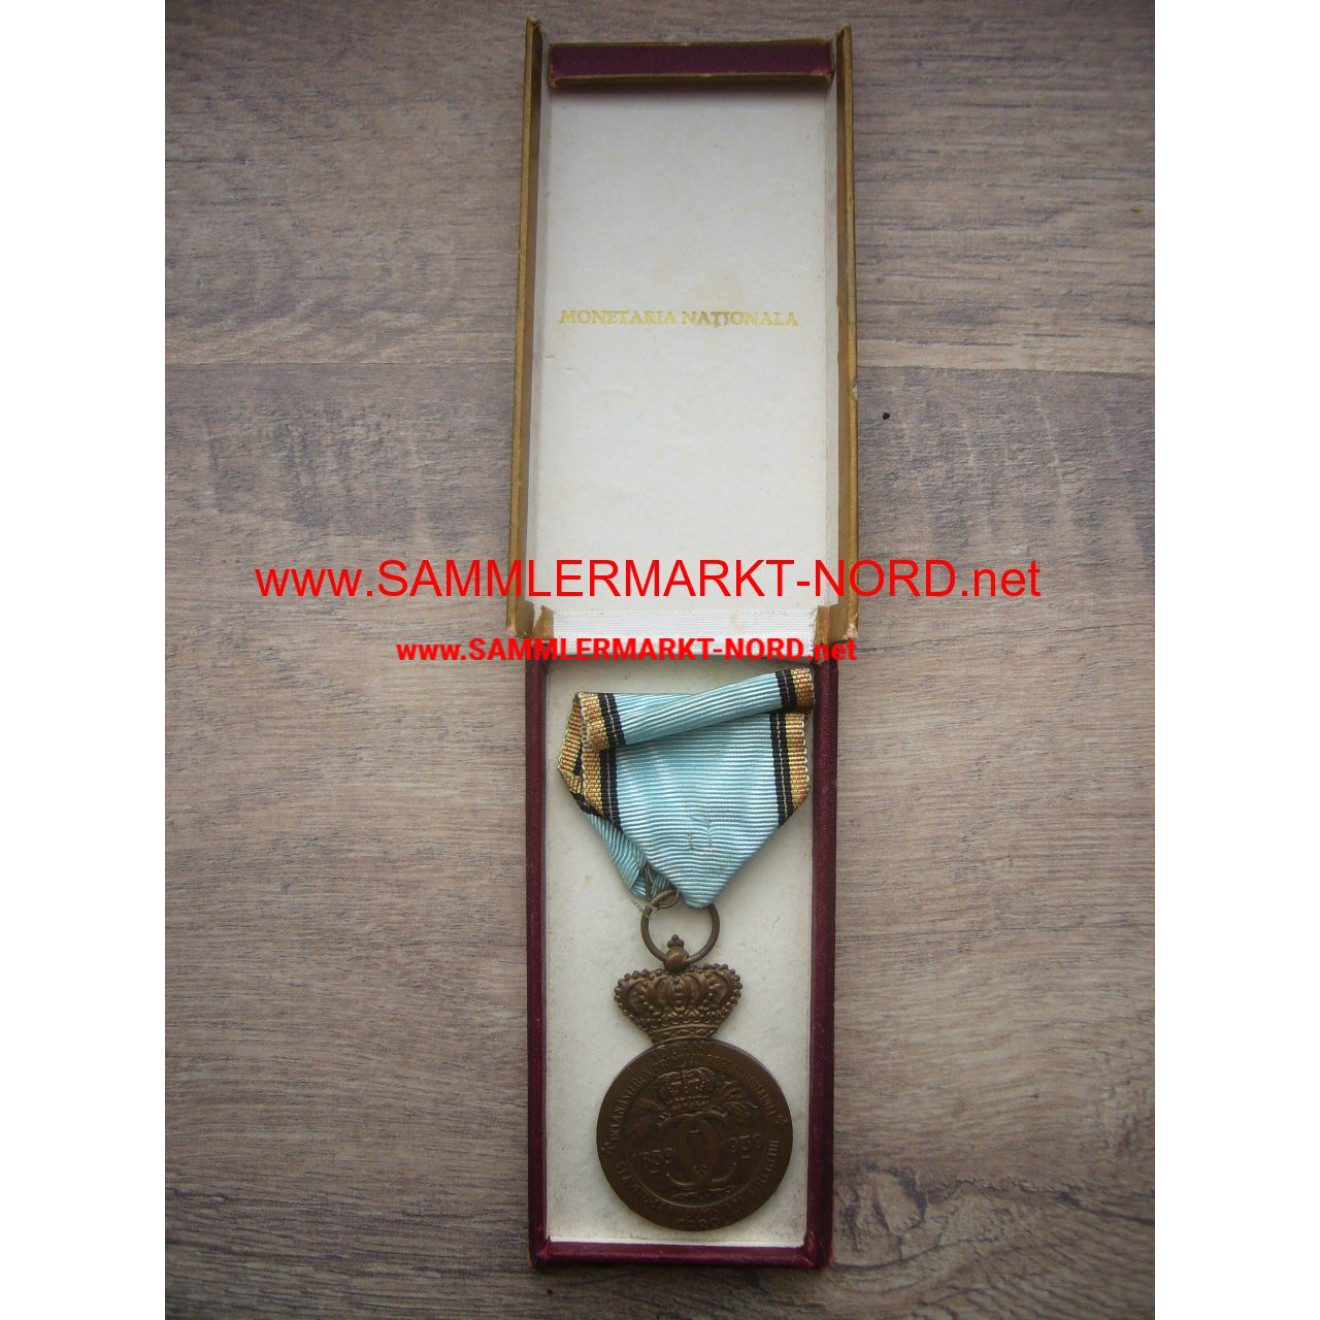 Romania - King Karl I commemorative medal 1939